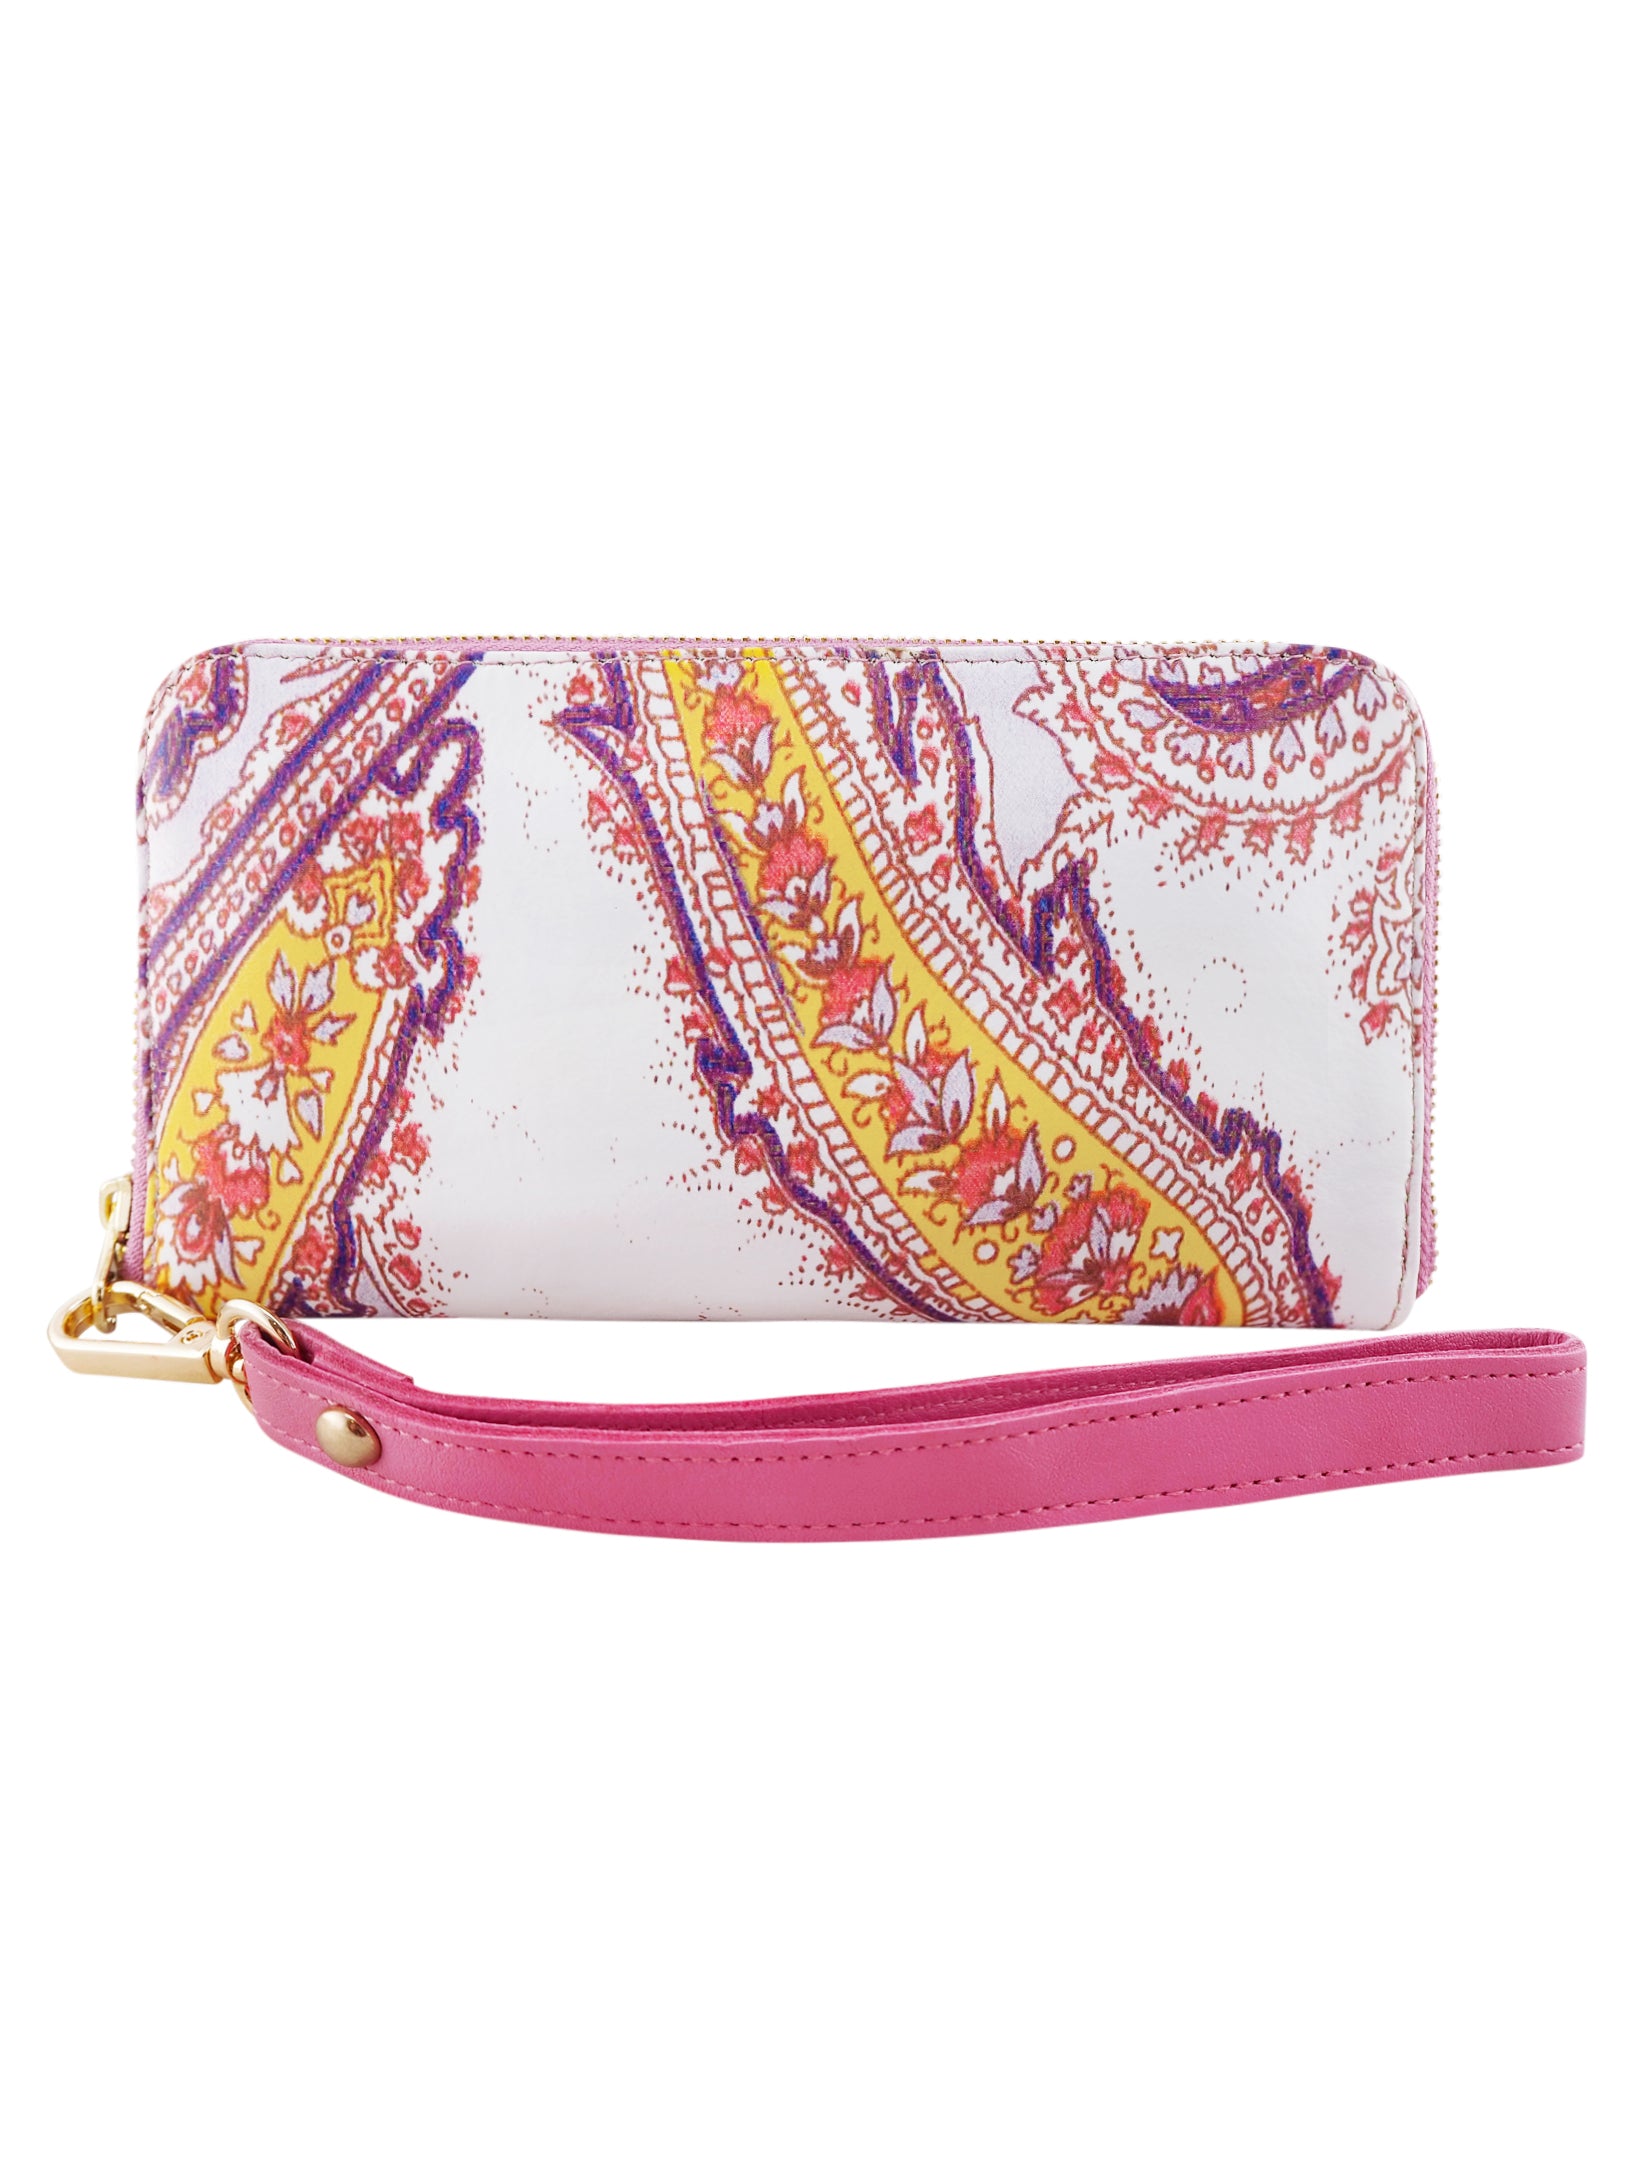 Bella Printed Wallet | Paisley/Dark Berry-Handbag & Wallet Accessories-CadelleLeather